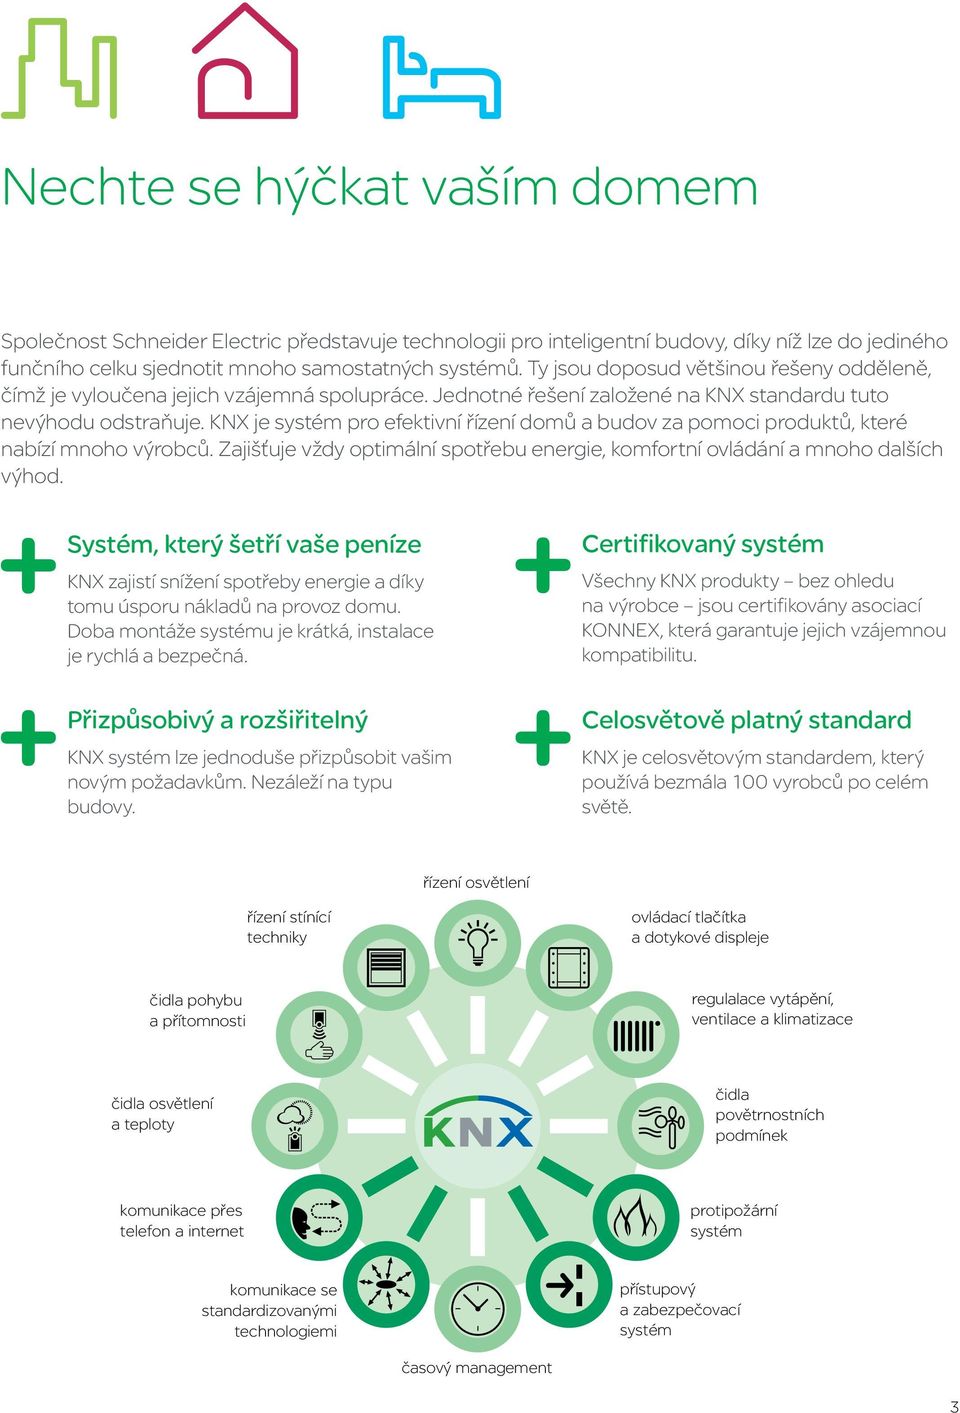 KNX je systém pro efektivní řízení domů a budov za pomoci produktů, které nabízí mnoho výrobců. Zajišťuje vždy optimální spotřebu energie, komfortní ovládání a mnoho dalších výhod.